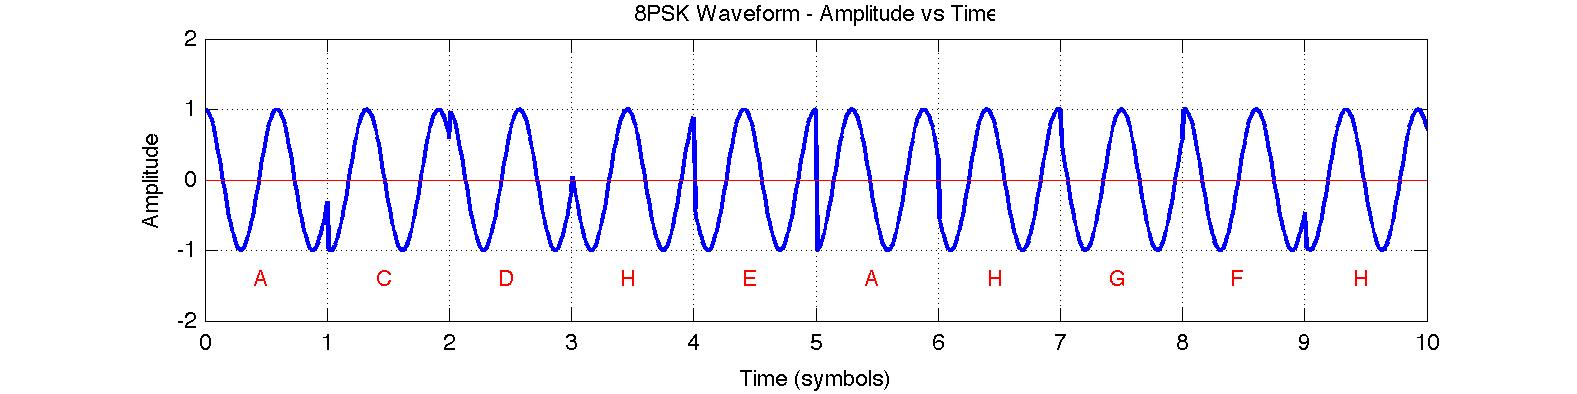 8PSK Waveform